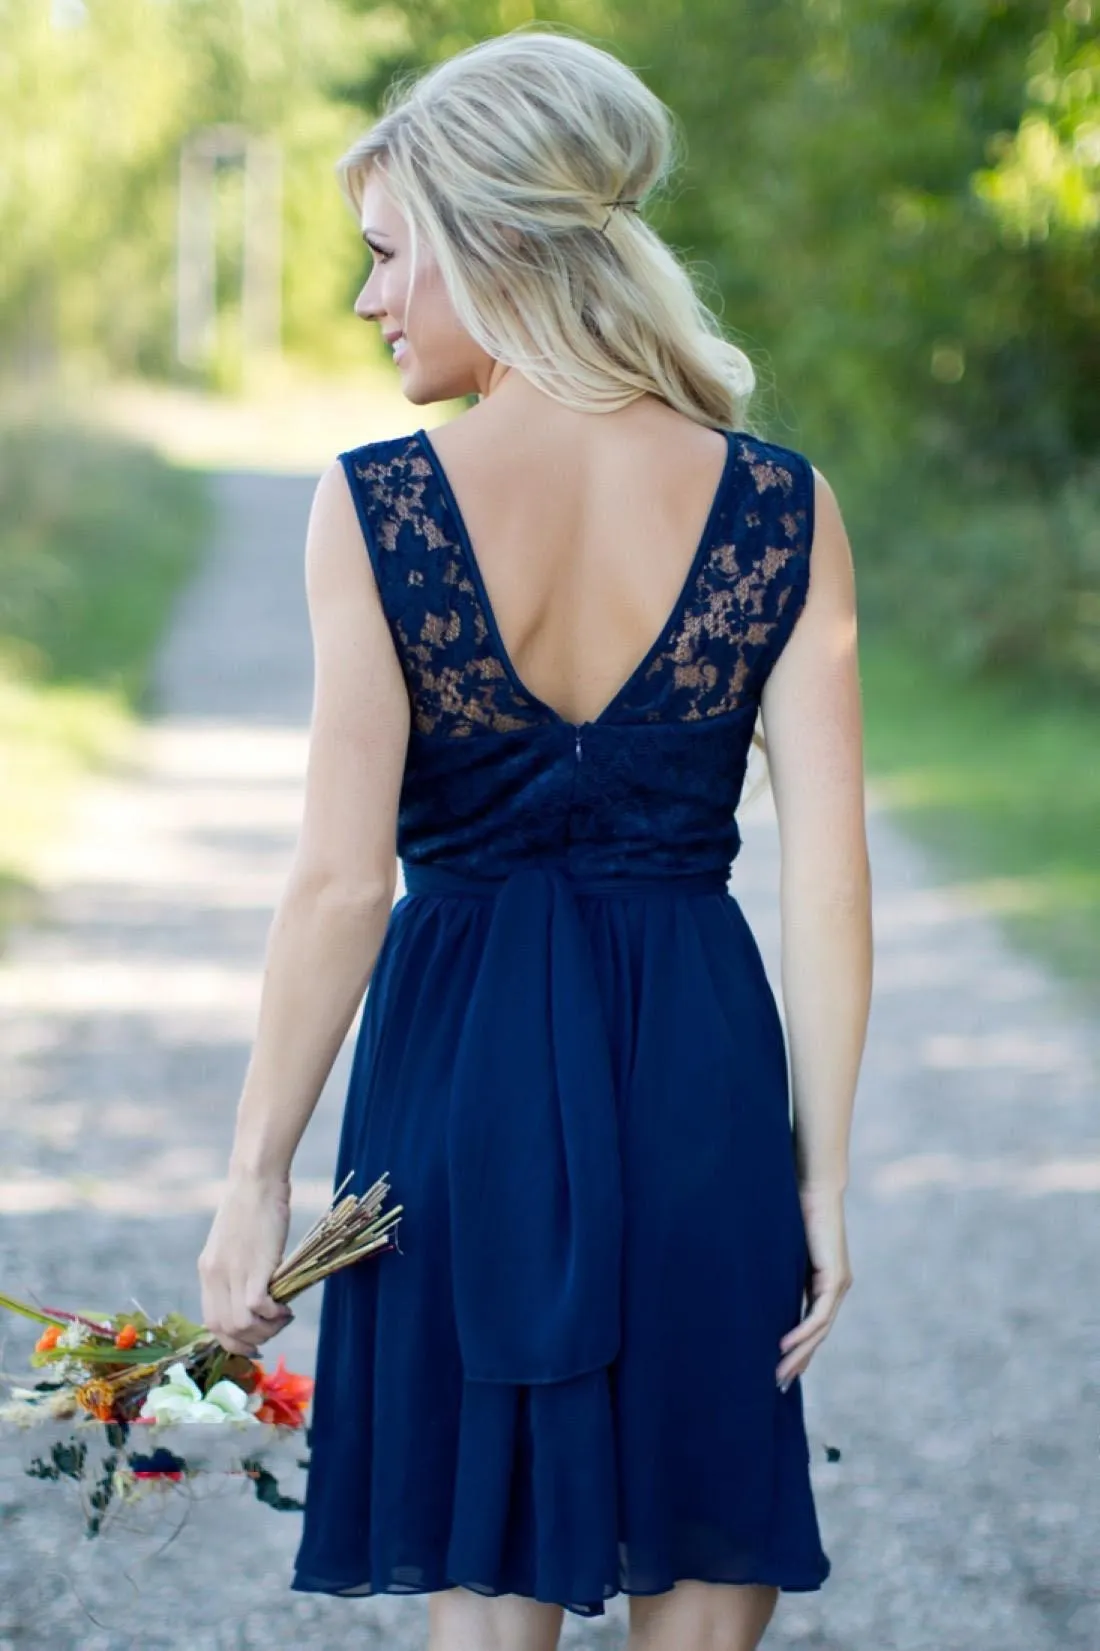 Landstijl Royal Blue Chiffon Lace Short Bruidsmeisje jurken voor bruiloften goedkoop juweel backless knie lengte casual jurken177d